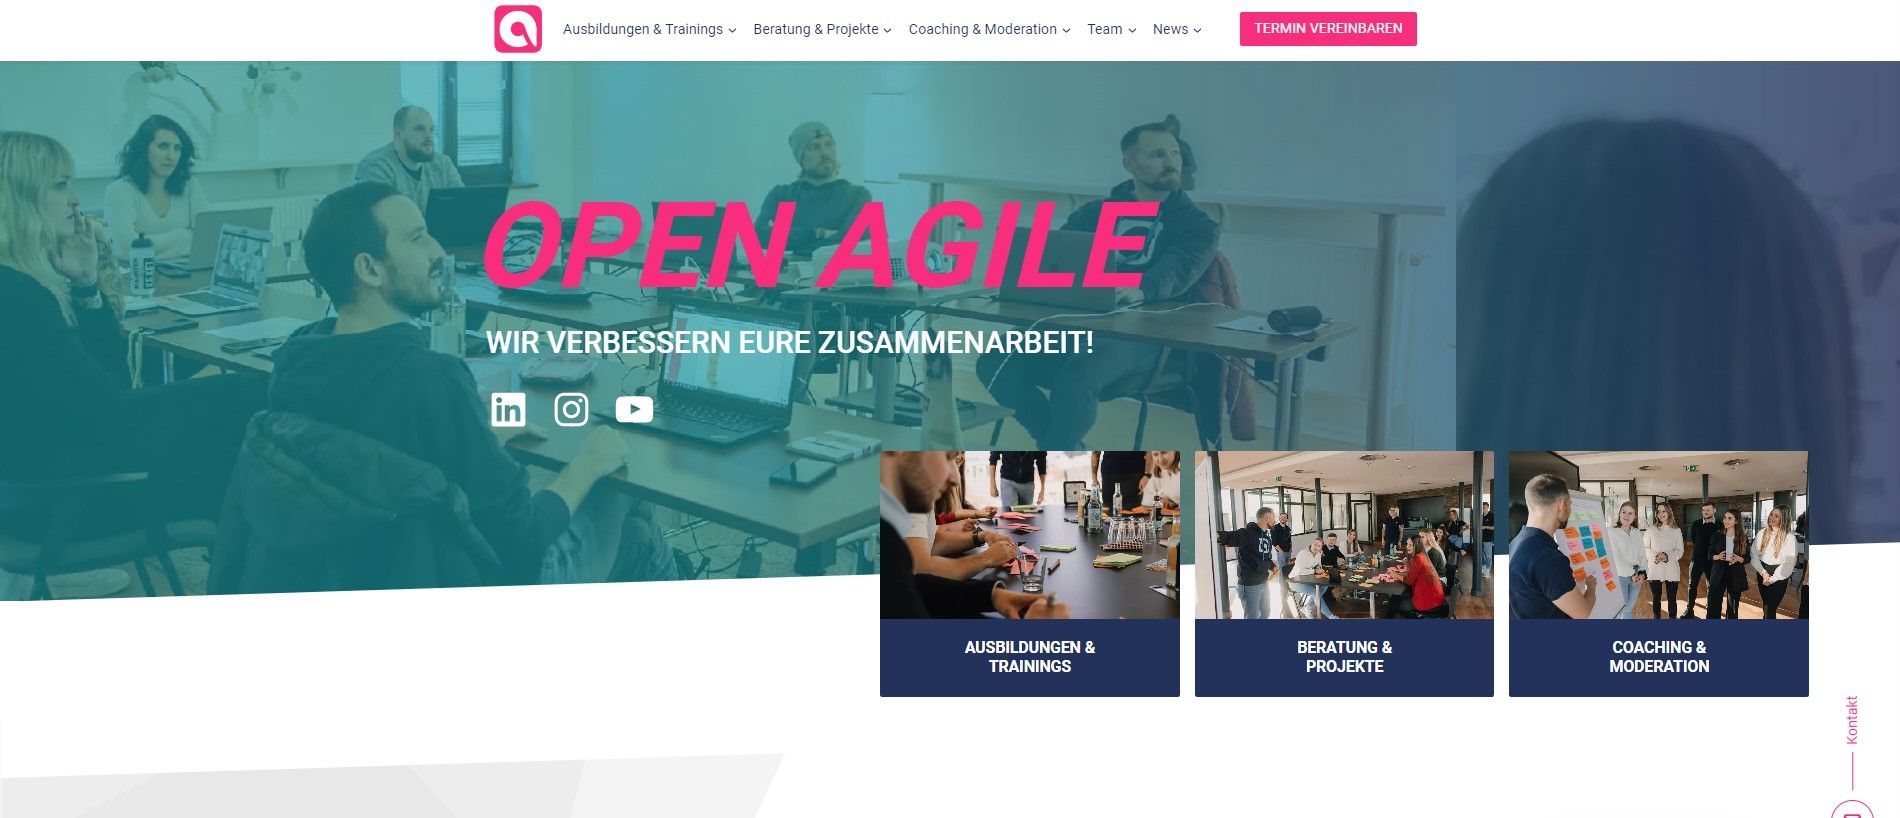 Open-agile